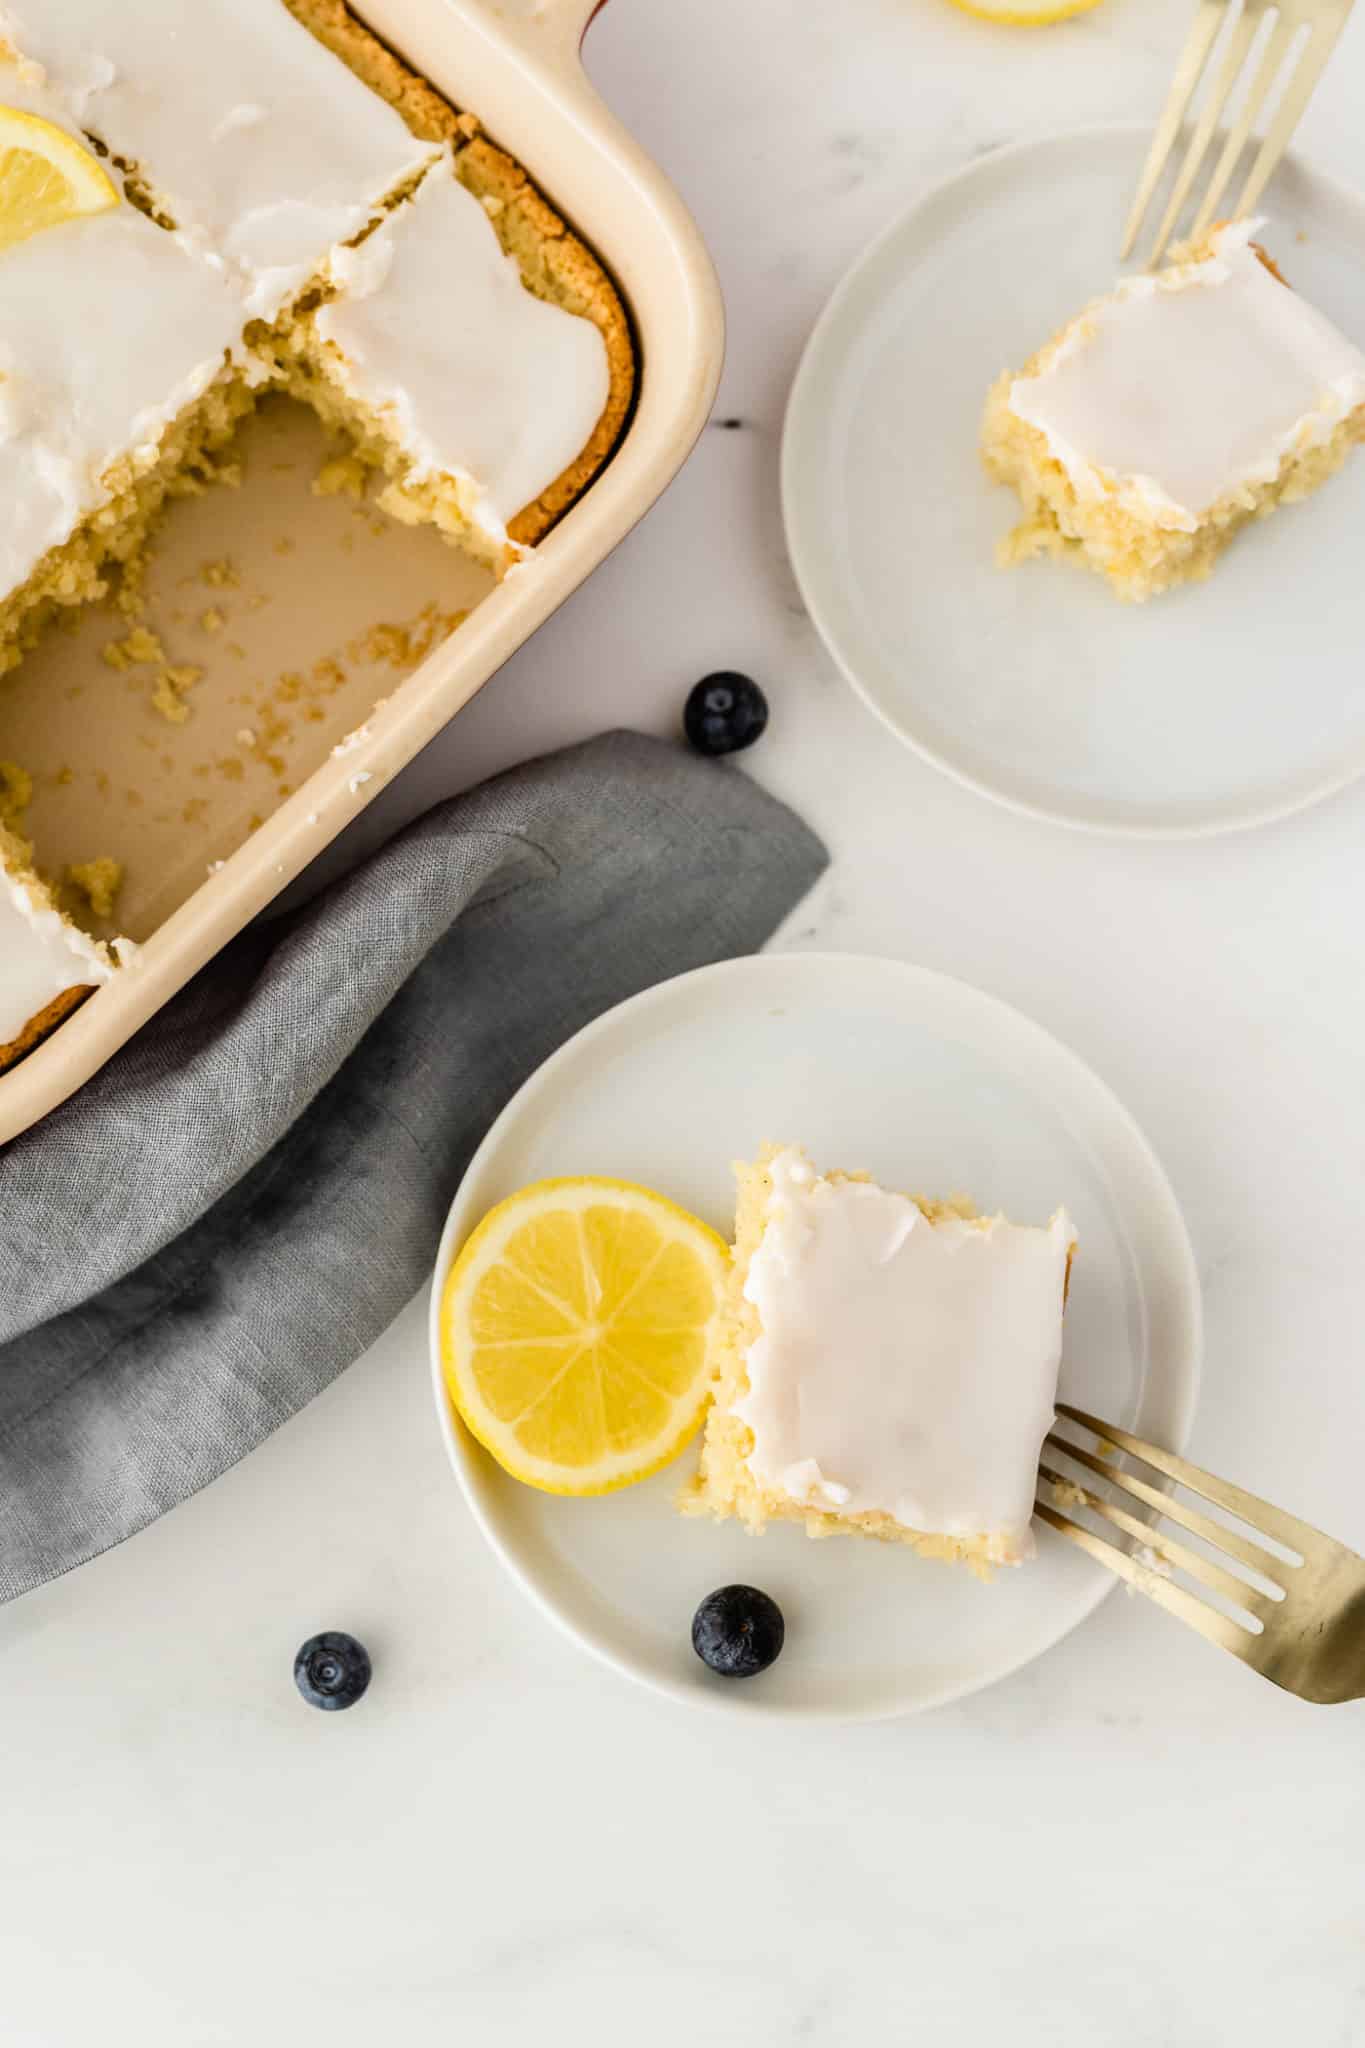 gluten free lemon cake served on white plates.